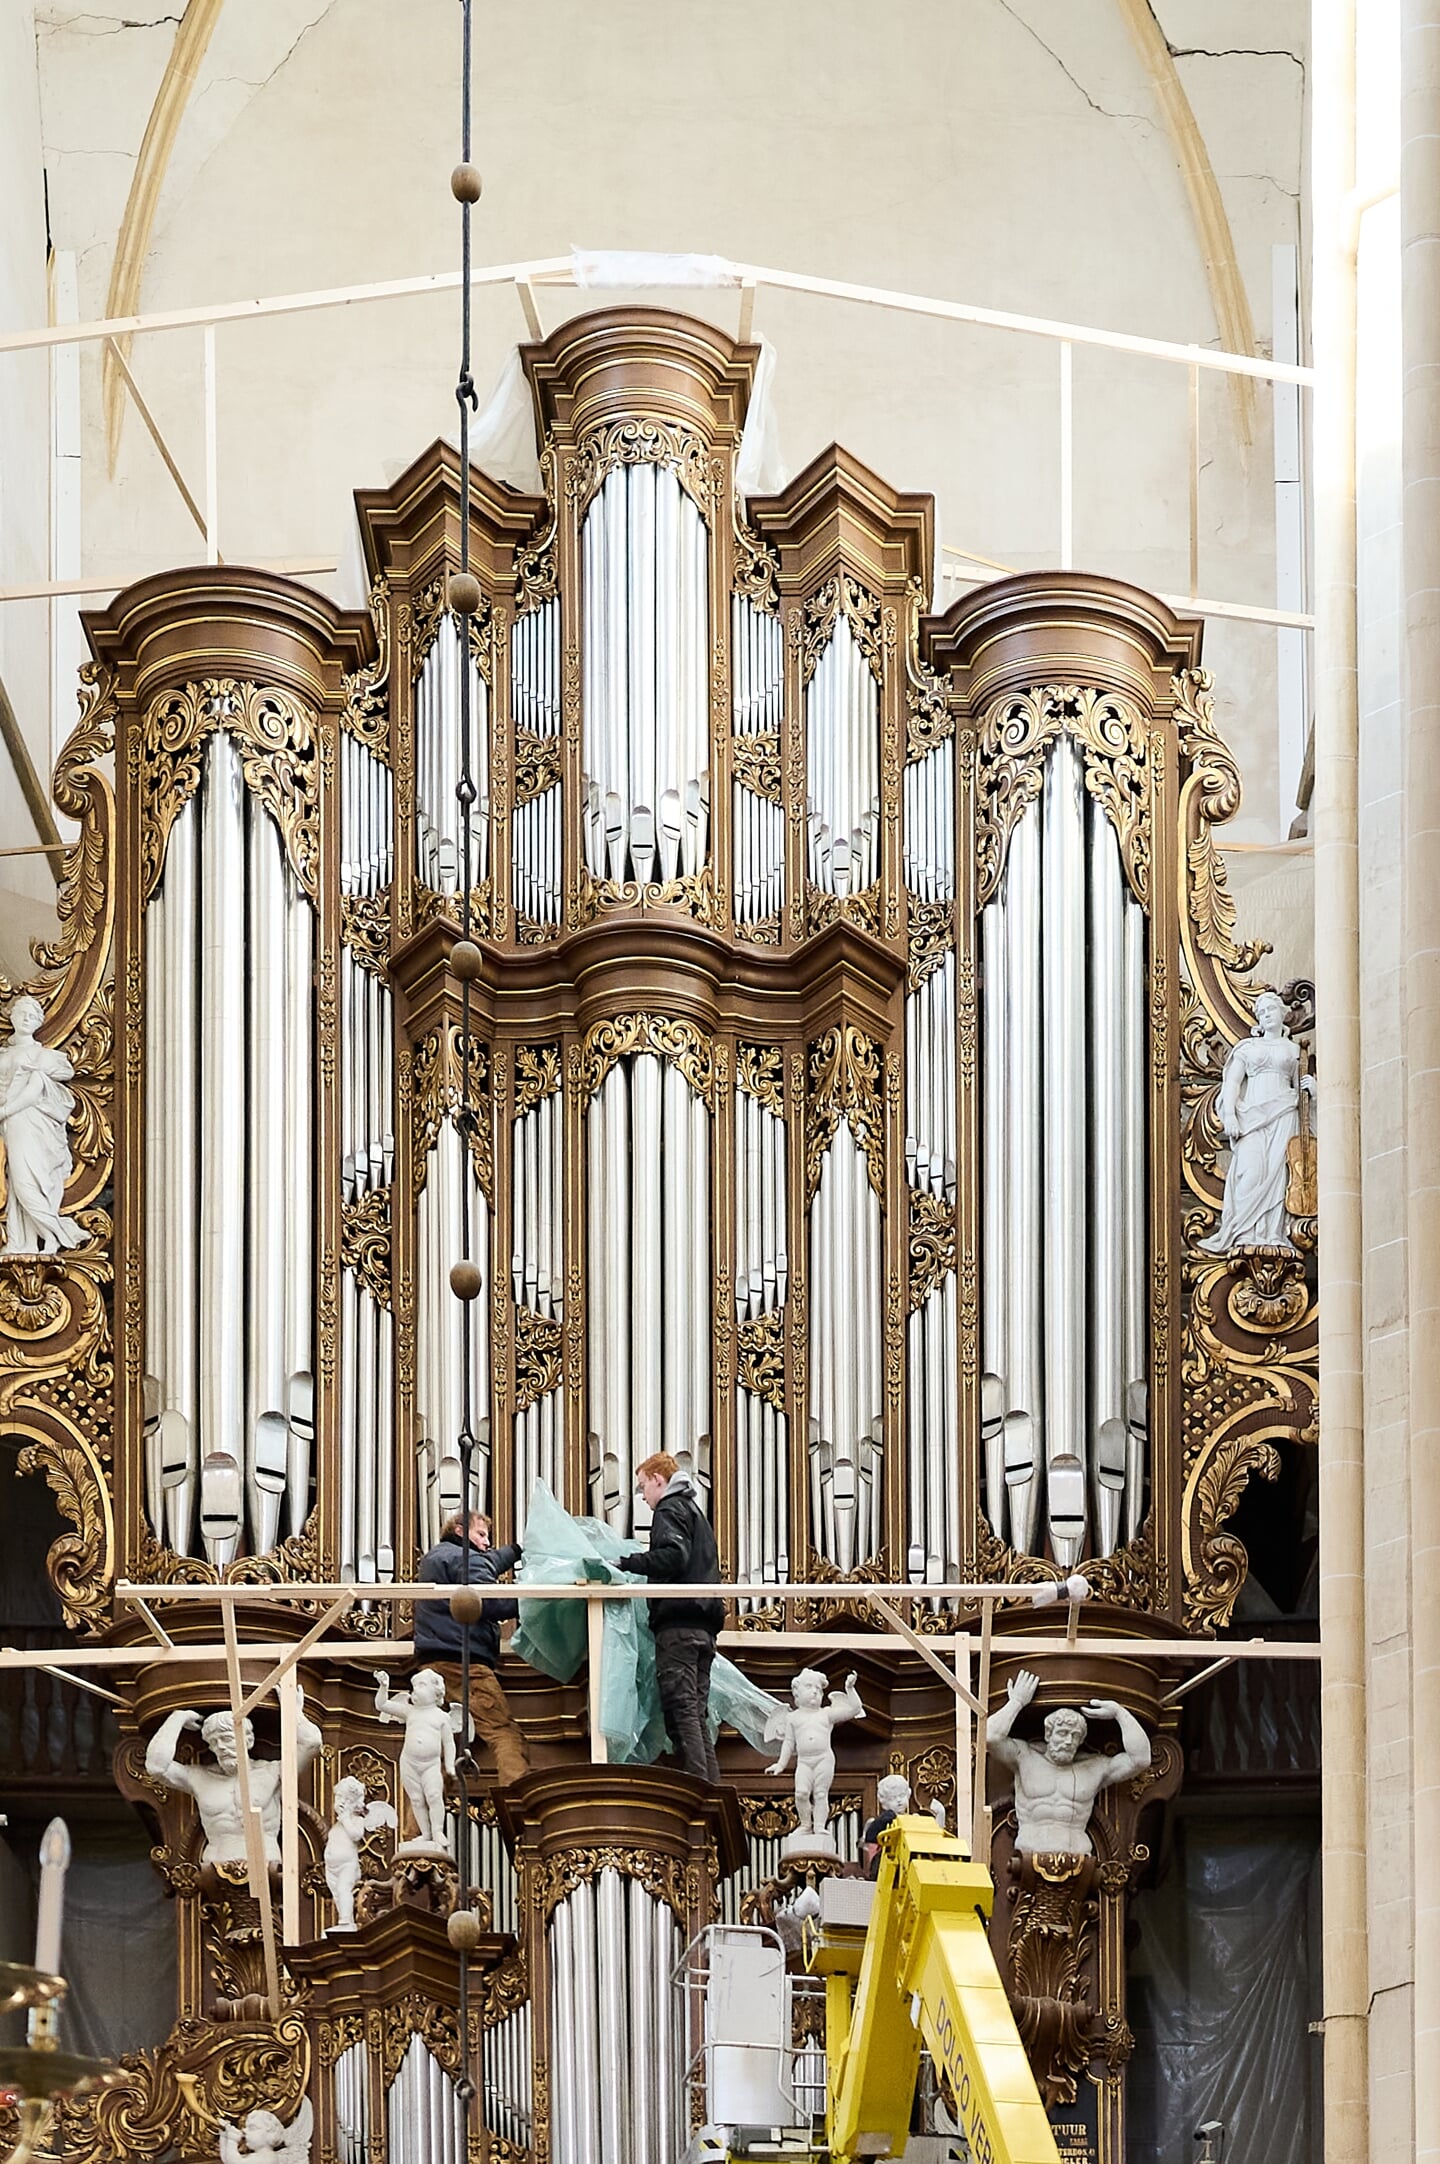 Kampen, 17 januari 2023. De schade aan de verzakkende Bovenkerk vormt een bedreiging voor het historische orgel in de 12e eeuwse kruisbasiliek. Het orgel wordt ingepakt in plastic ter bescherming tegen bouwstof.